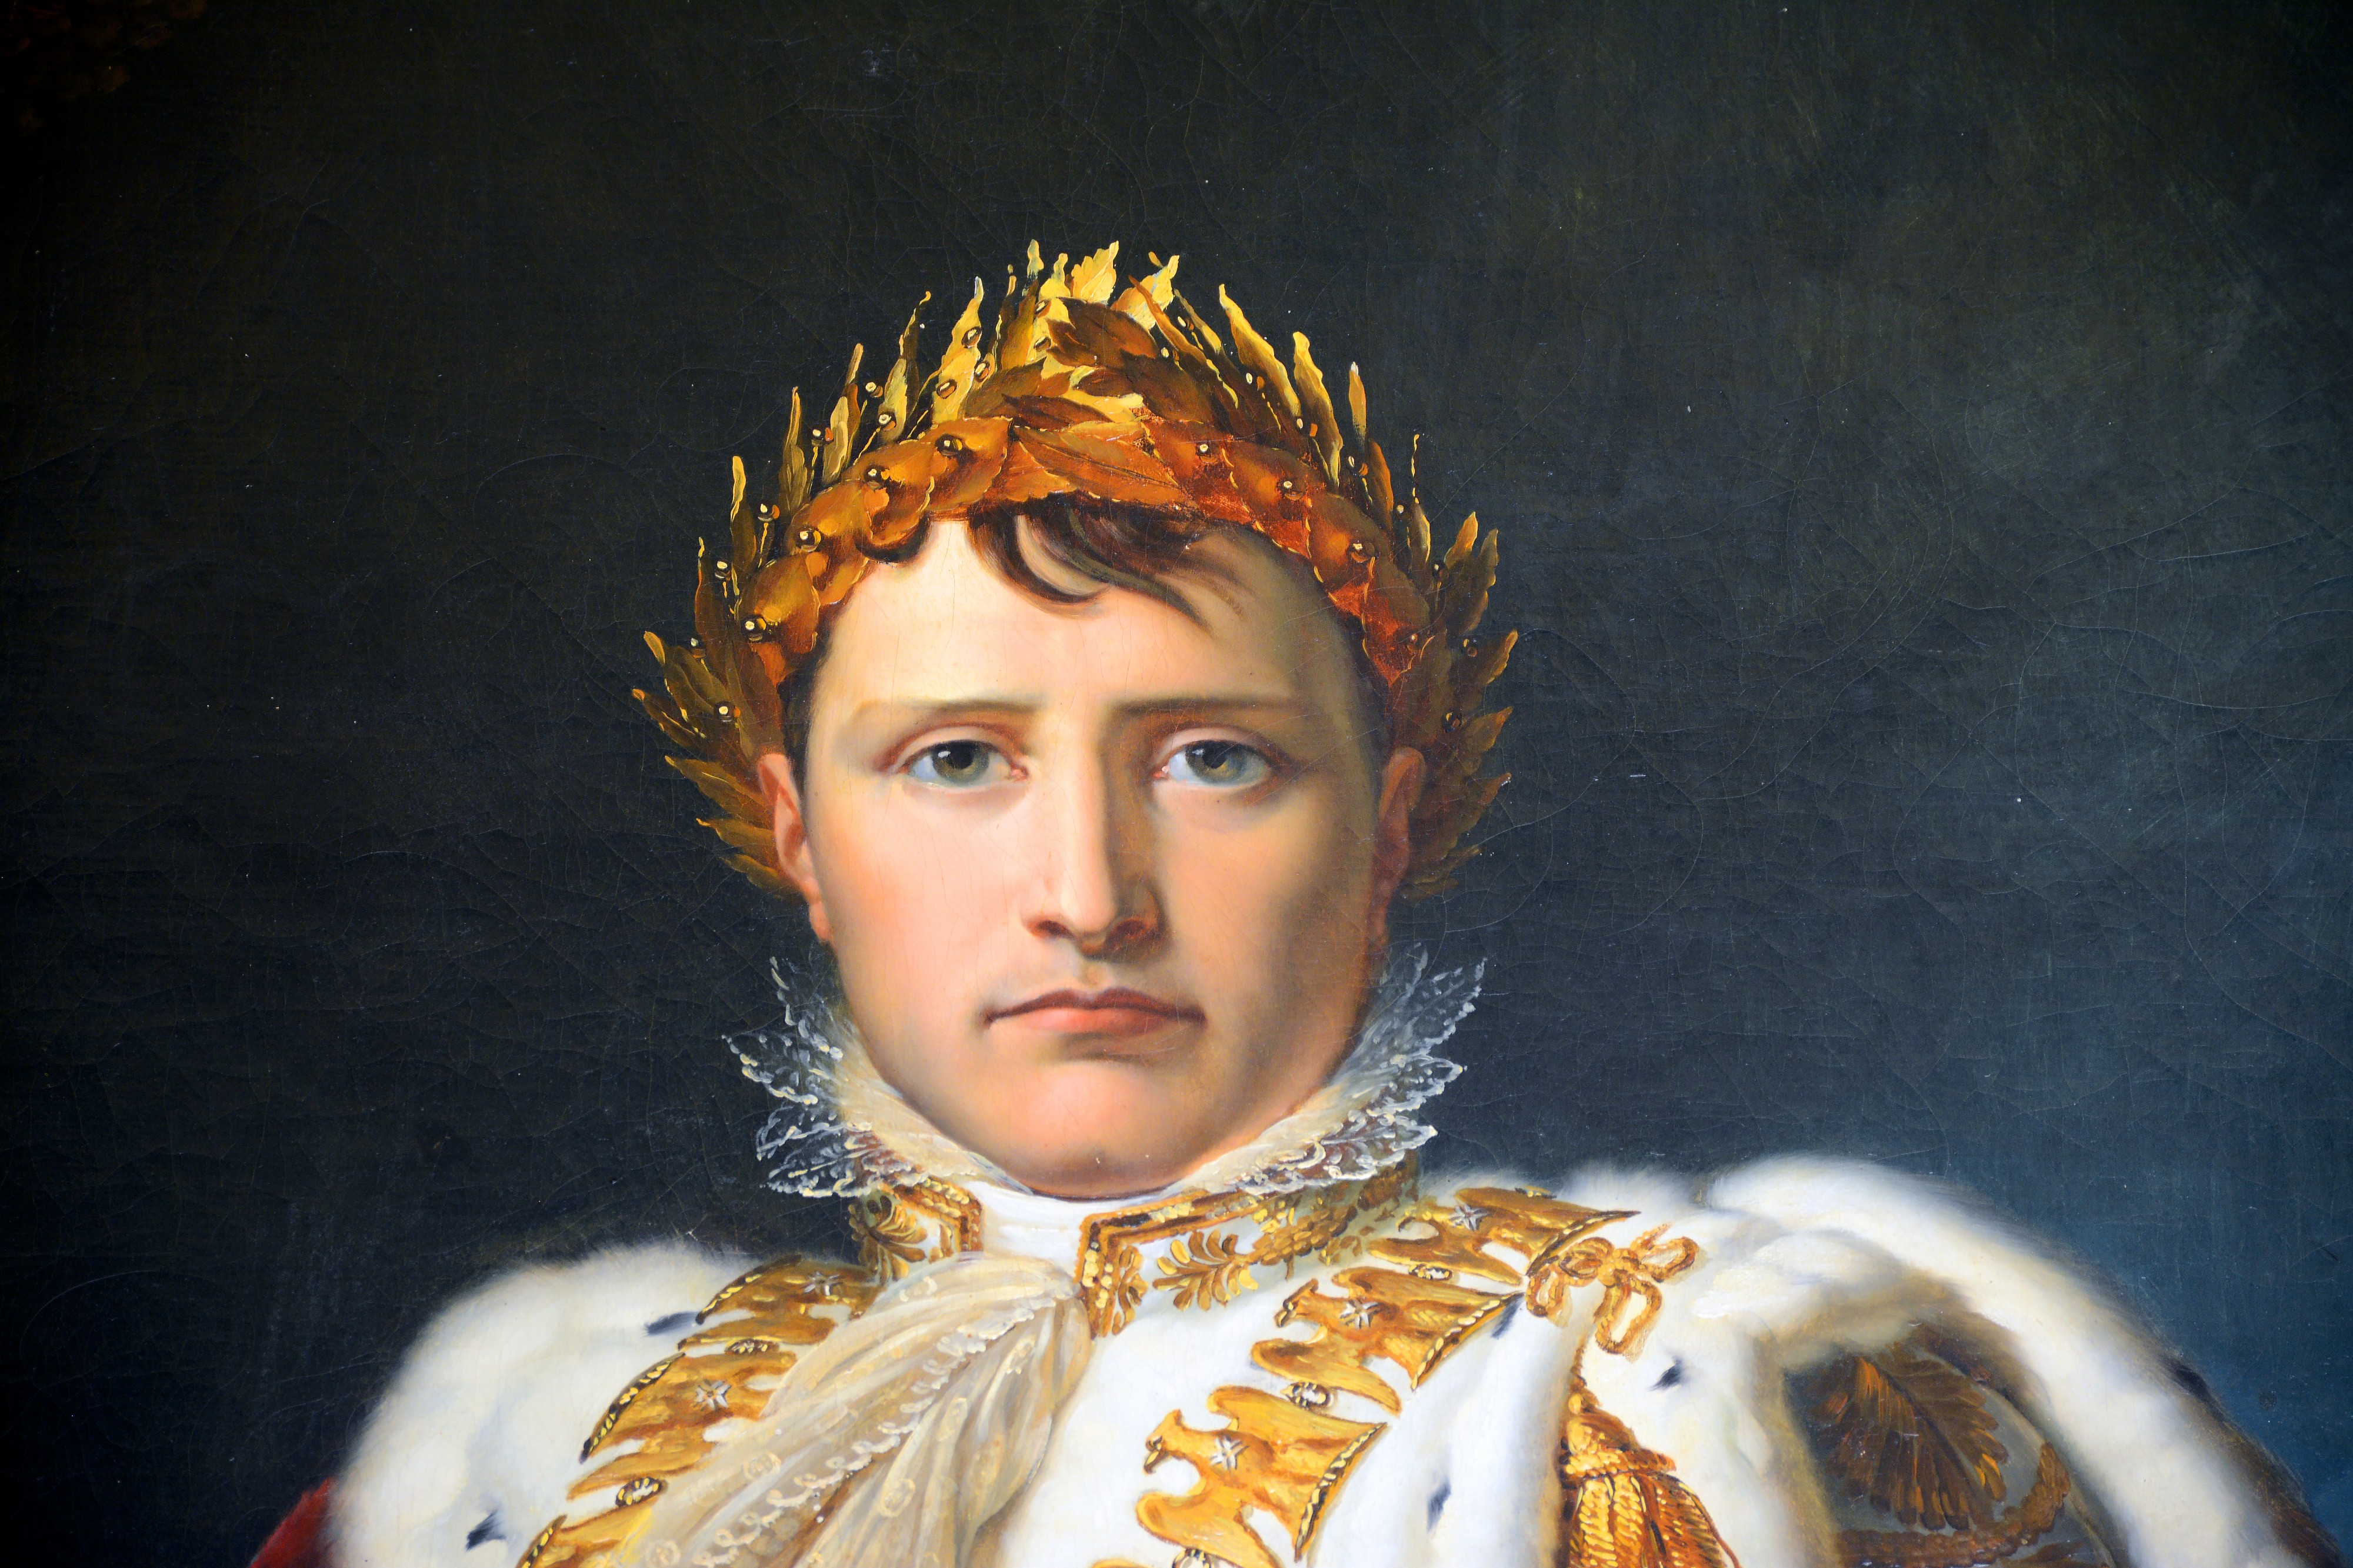 Napoleon in Coronation Robes (François Gerard) in Museo di capodimonte